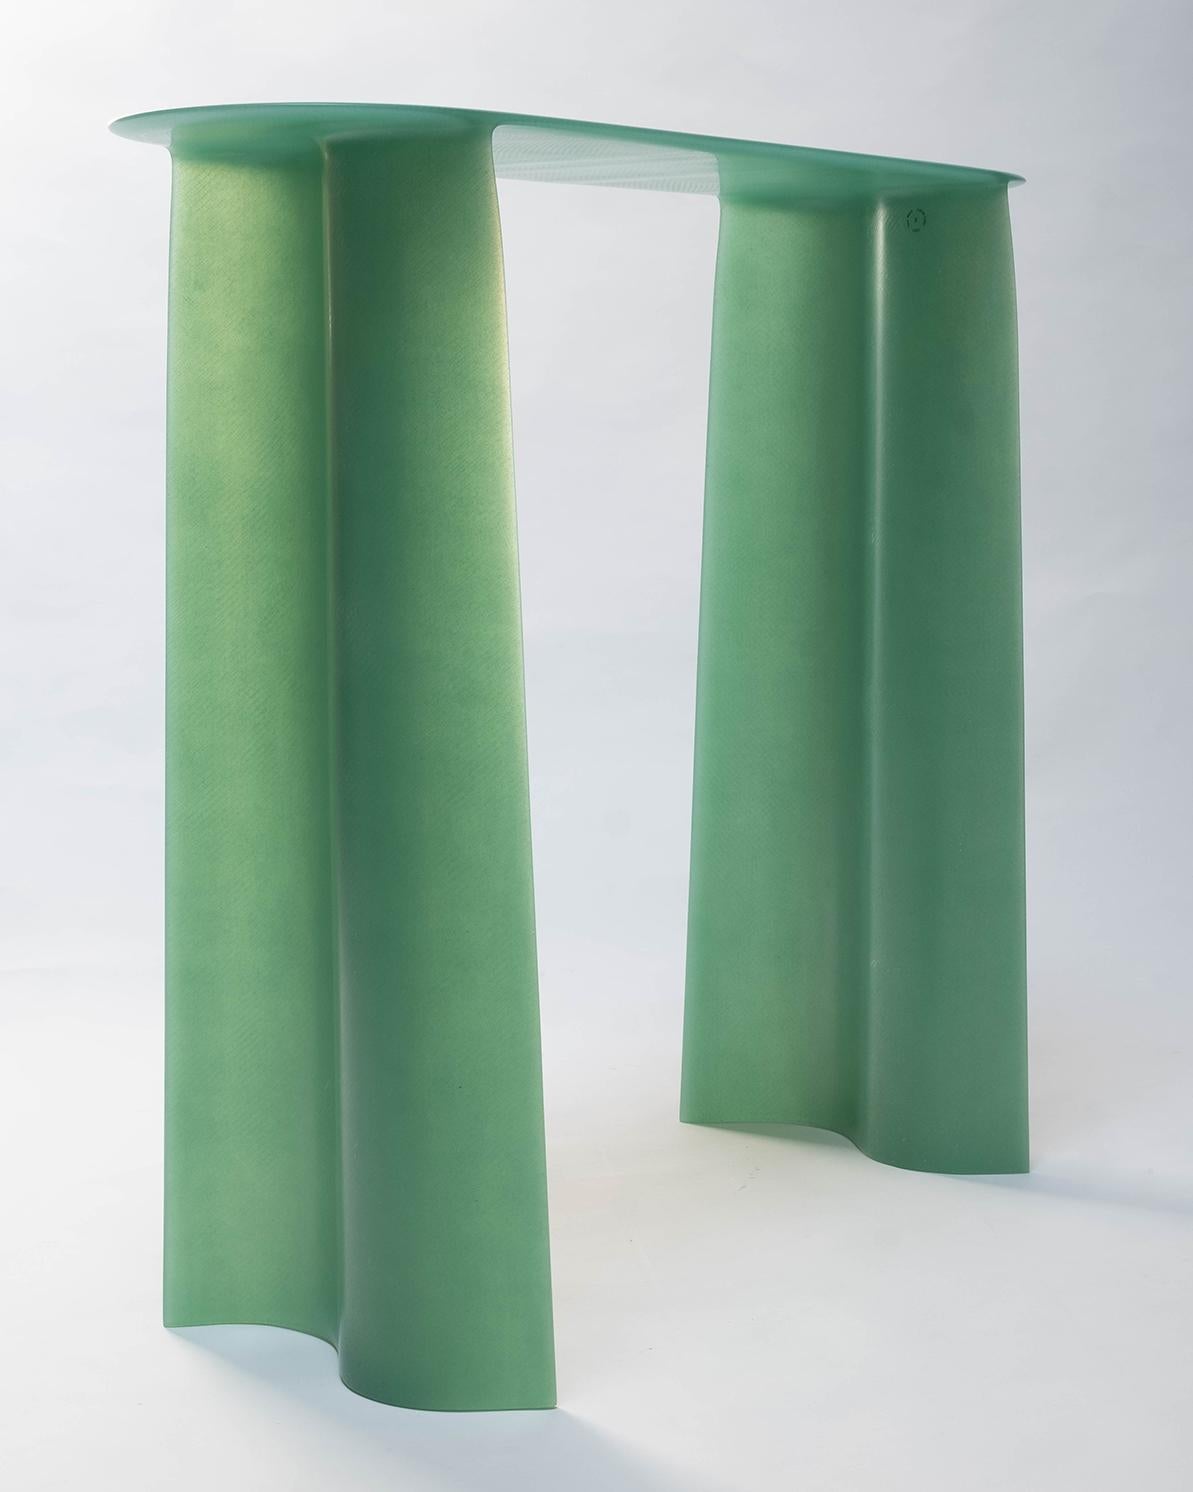 Zeitgenössische Konsole aus grünem Glasfaser, New Wave, 140 cm, von Lukas Cober (Niederländisch)